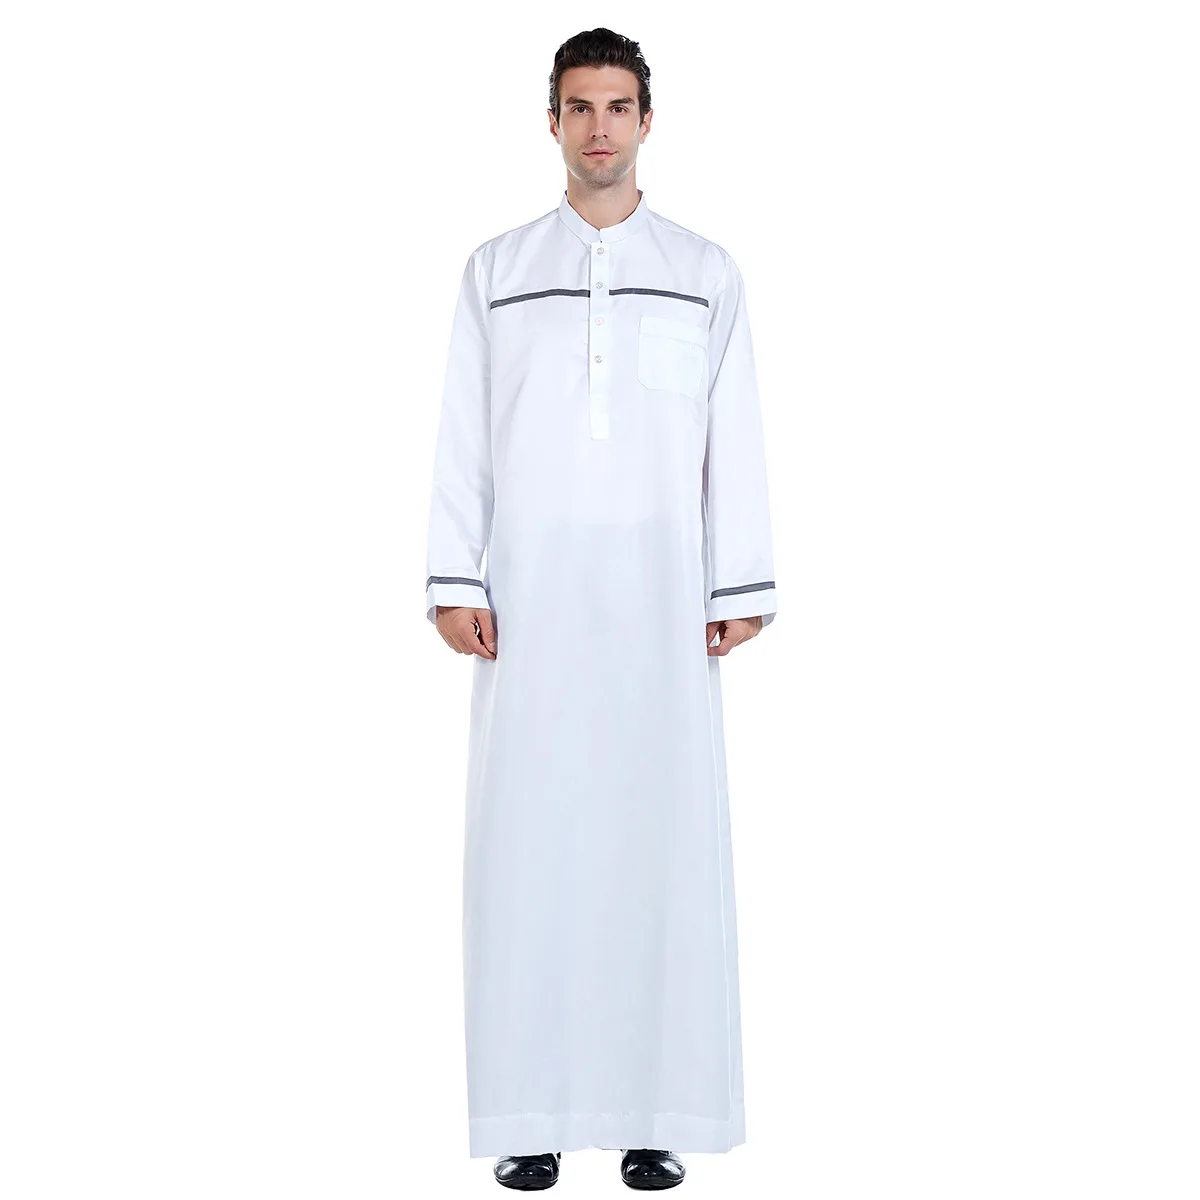 Blanca/negra Blanco/Negro/gris/Beige Abaya musulmana Kaftan árabe islámica ropa vestido largo árabes del Oriente Medio de los hombres traje suelto Jubba Thobe